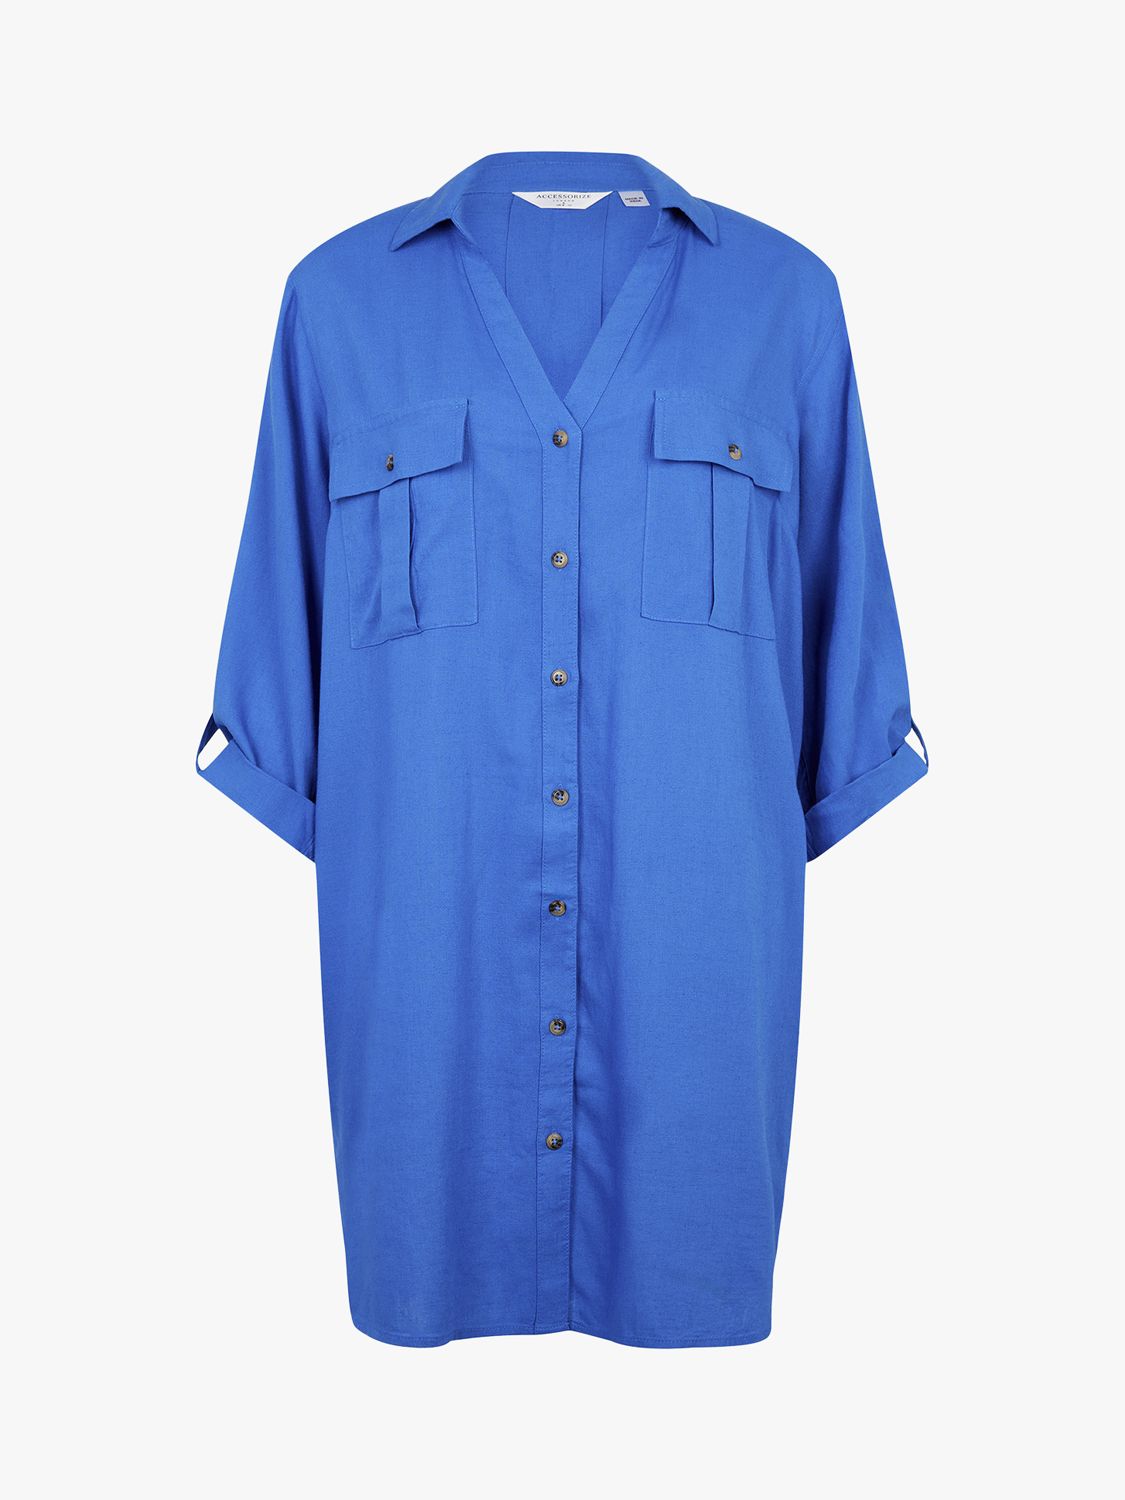 Accessorize Longline Beach Shirt, Blue, L